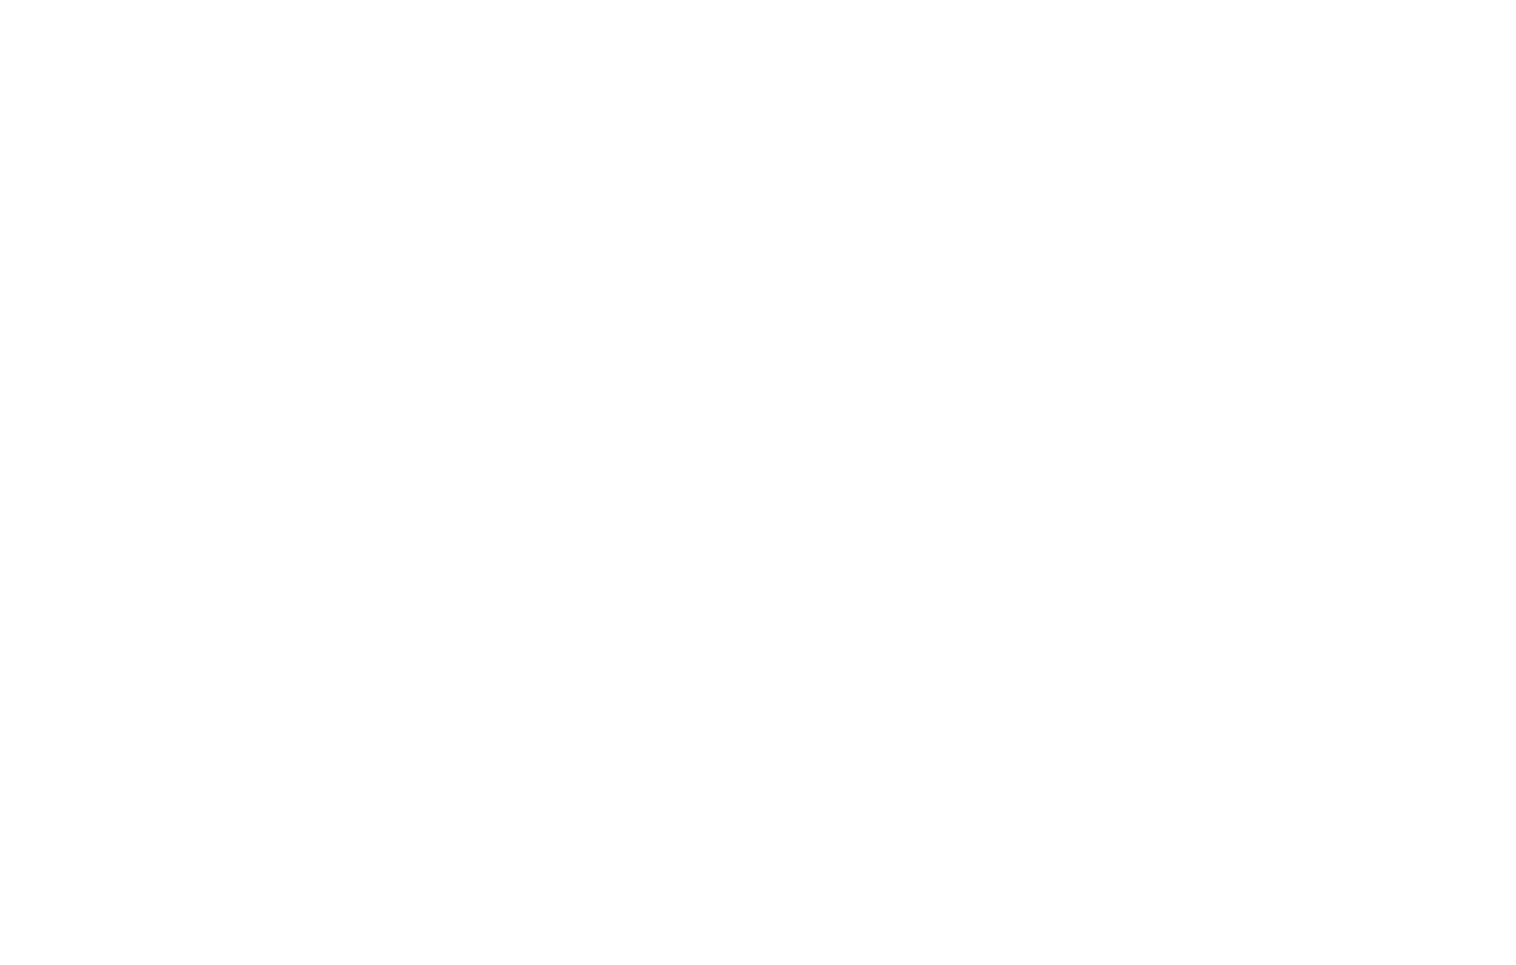 Berkshire Grey logo pour fonds sombres (PNG transparent)